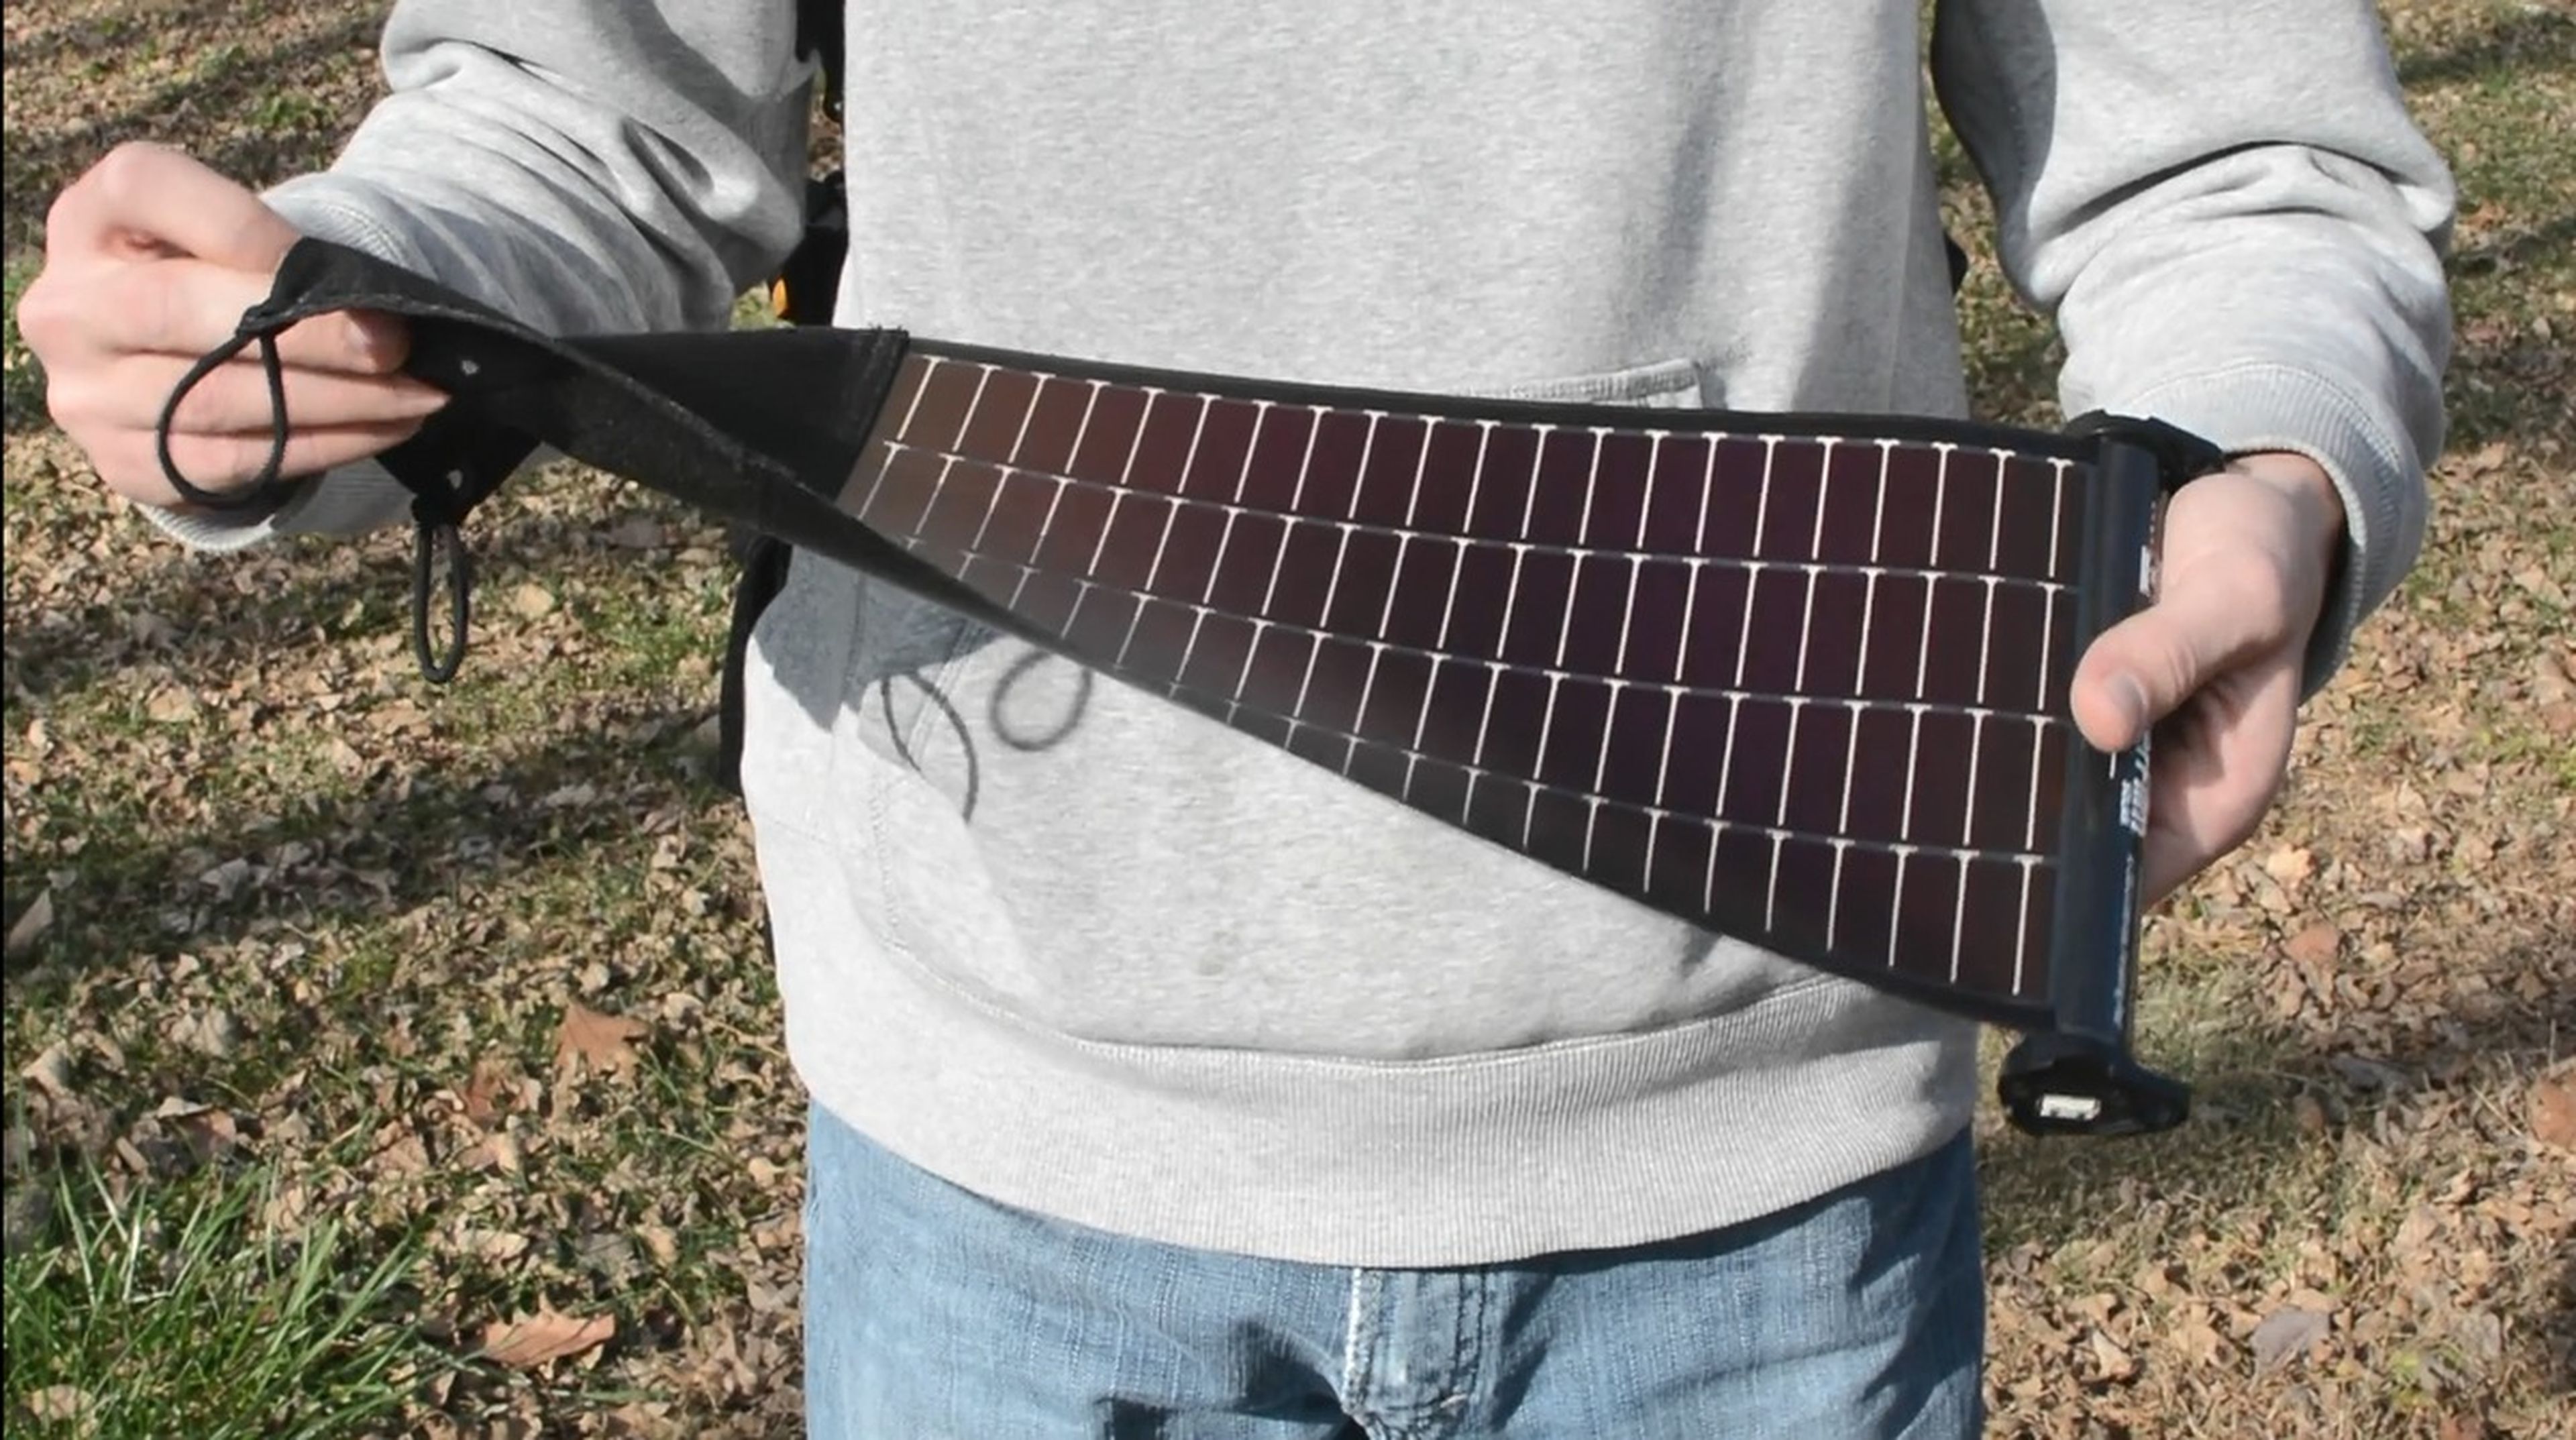 Estos paneles solares flexibles y enrollables recargan la batería del móvil